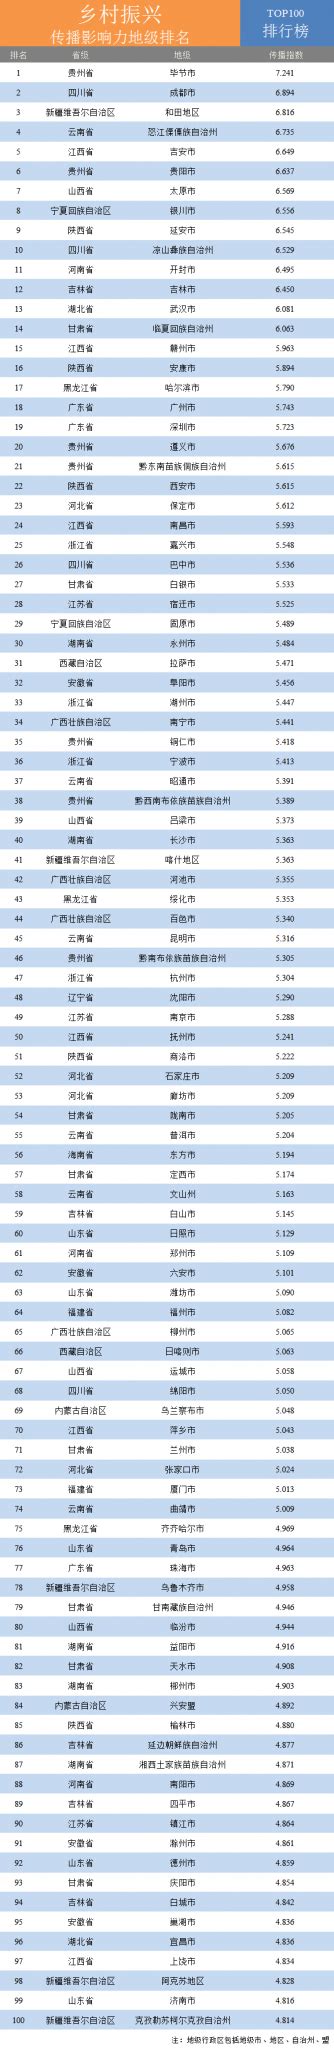 2020年乡村振兴传播影响力评价榜单发布,毕节市获地级排名第一名 – 69农业规划设计.兆联顾问公司